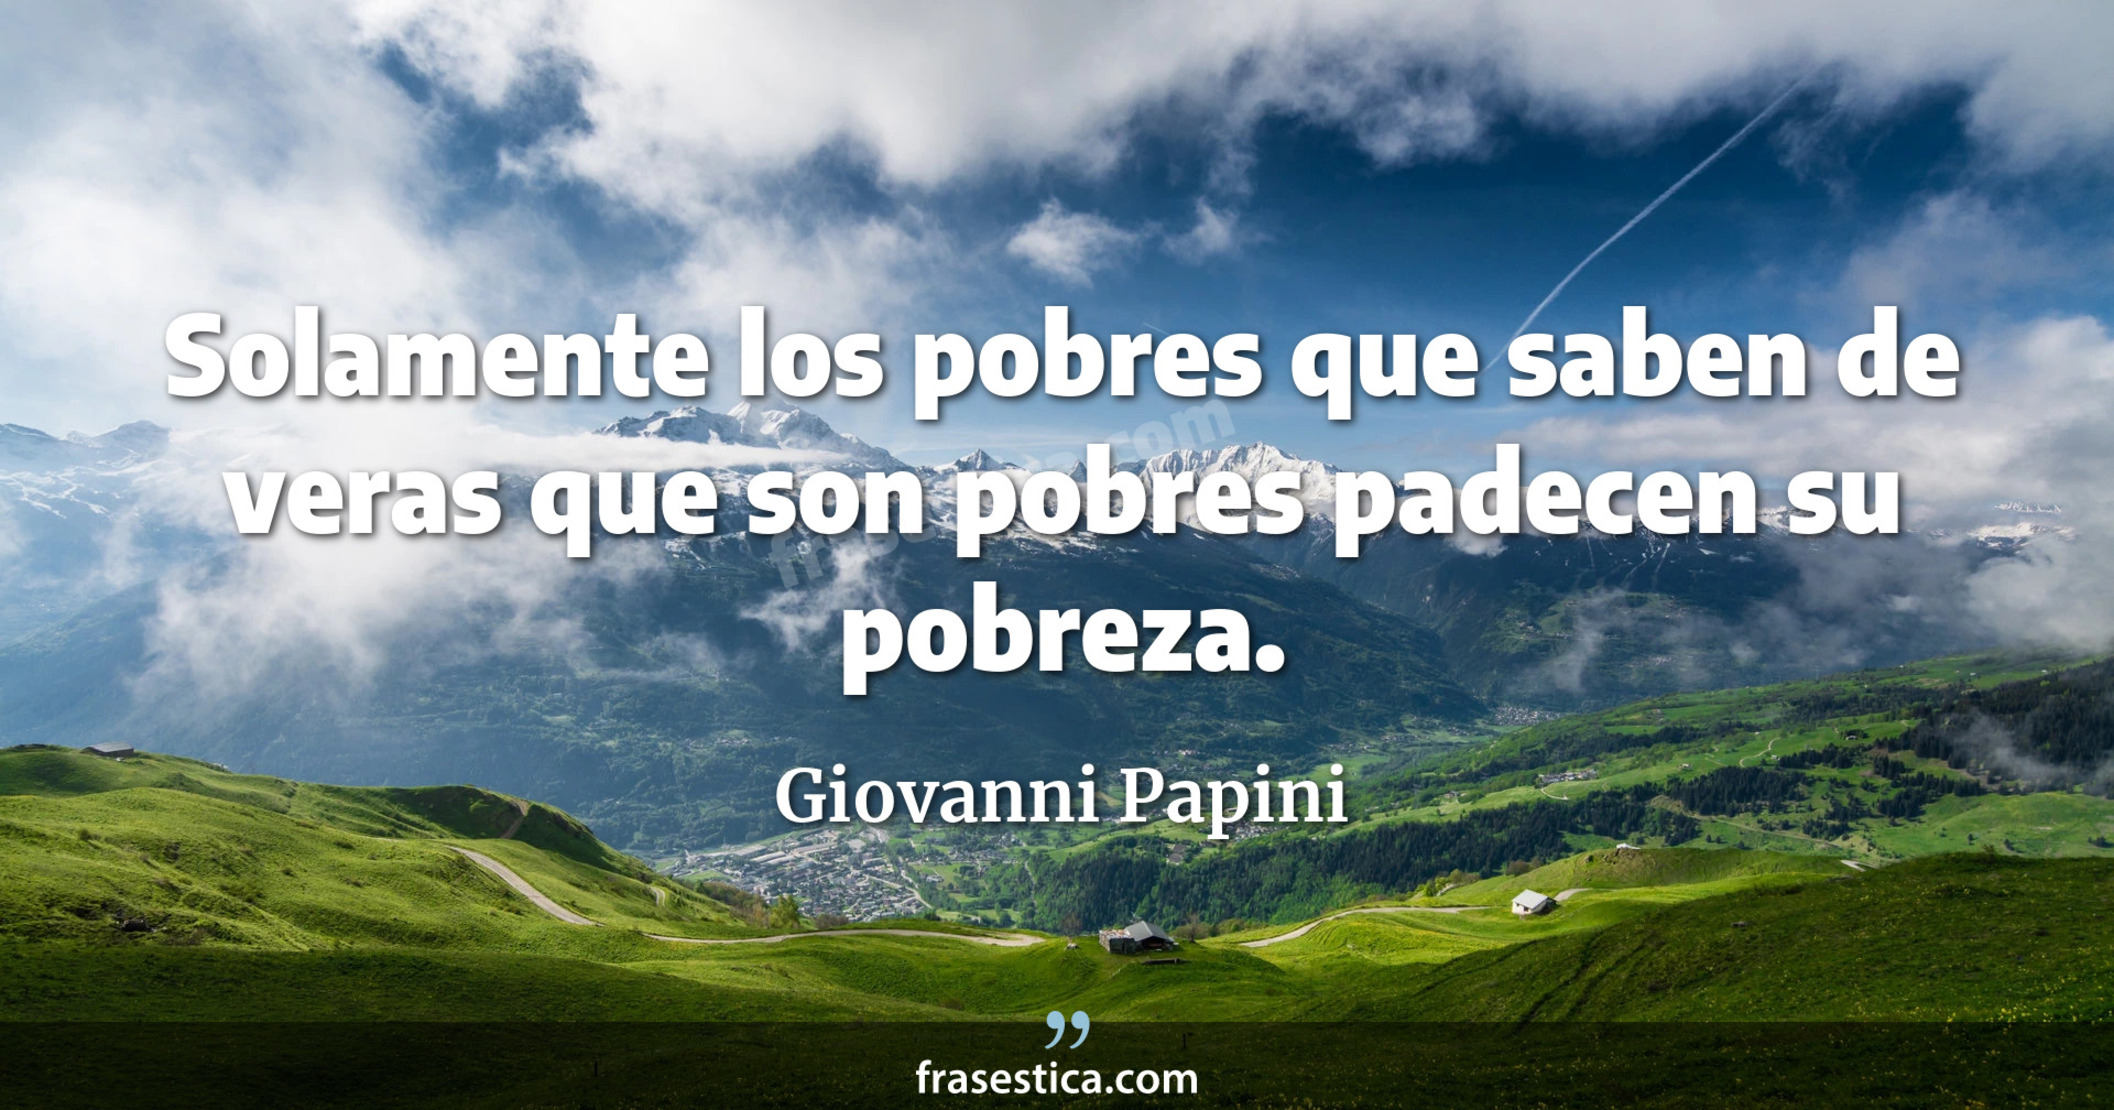 Solamente los pobres que saben de veras que son pobres padecen su pobreza. - Giovanni Papini